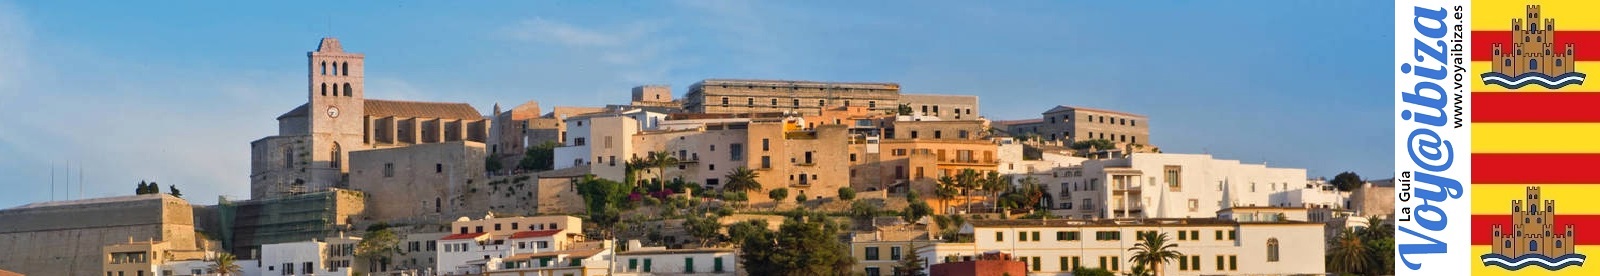 Barrio de sa Penya, Ibiza - Eivissa